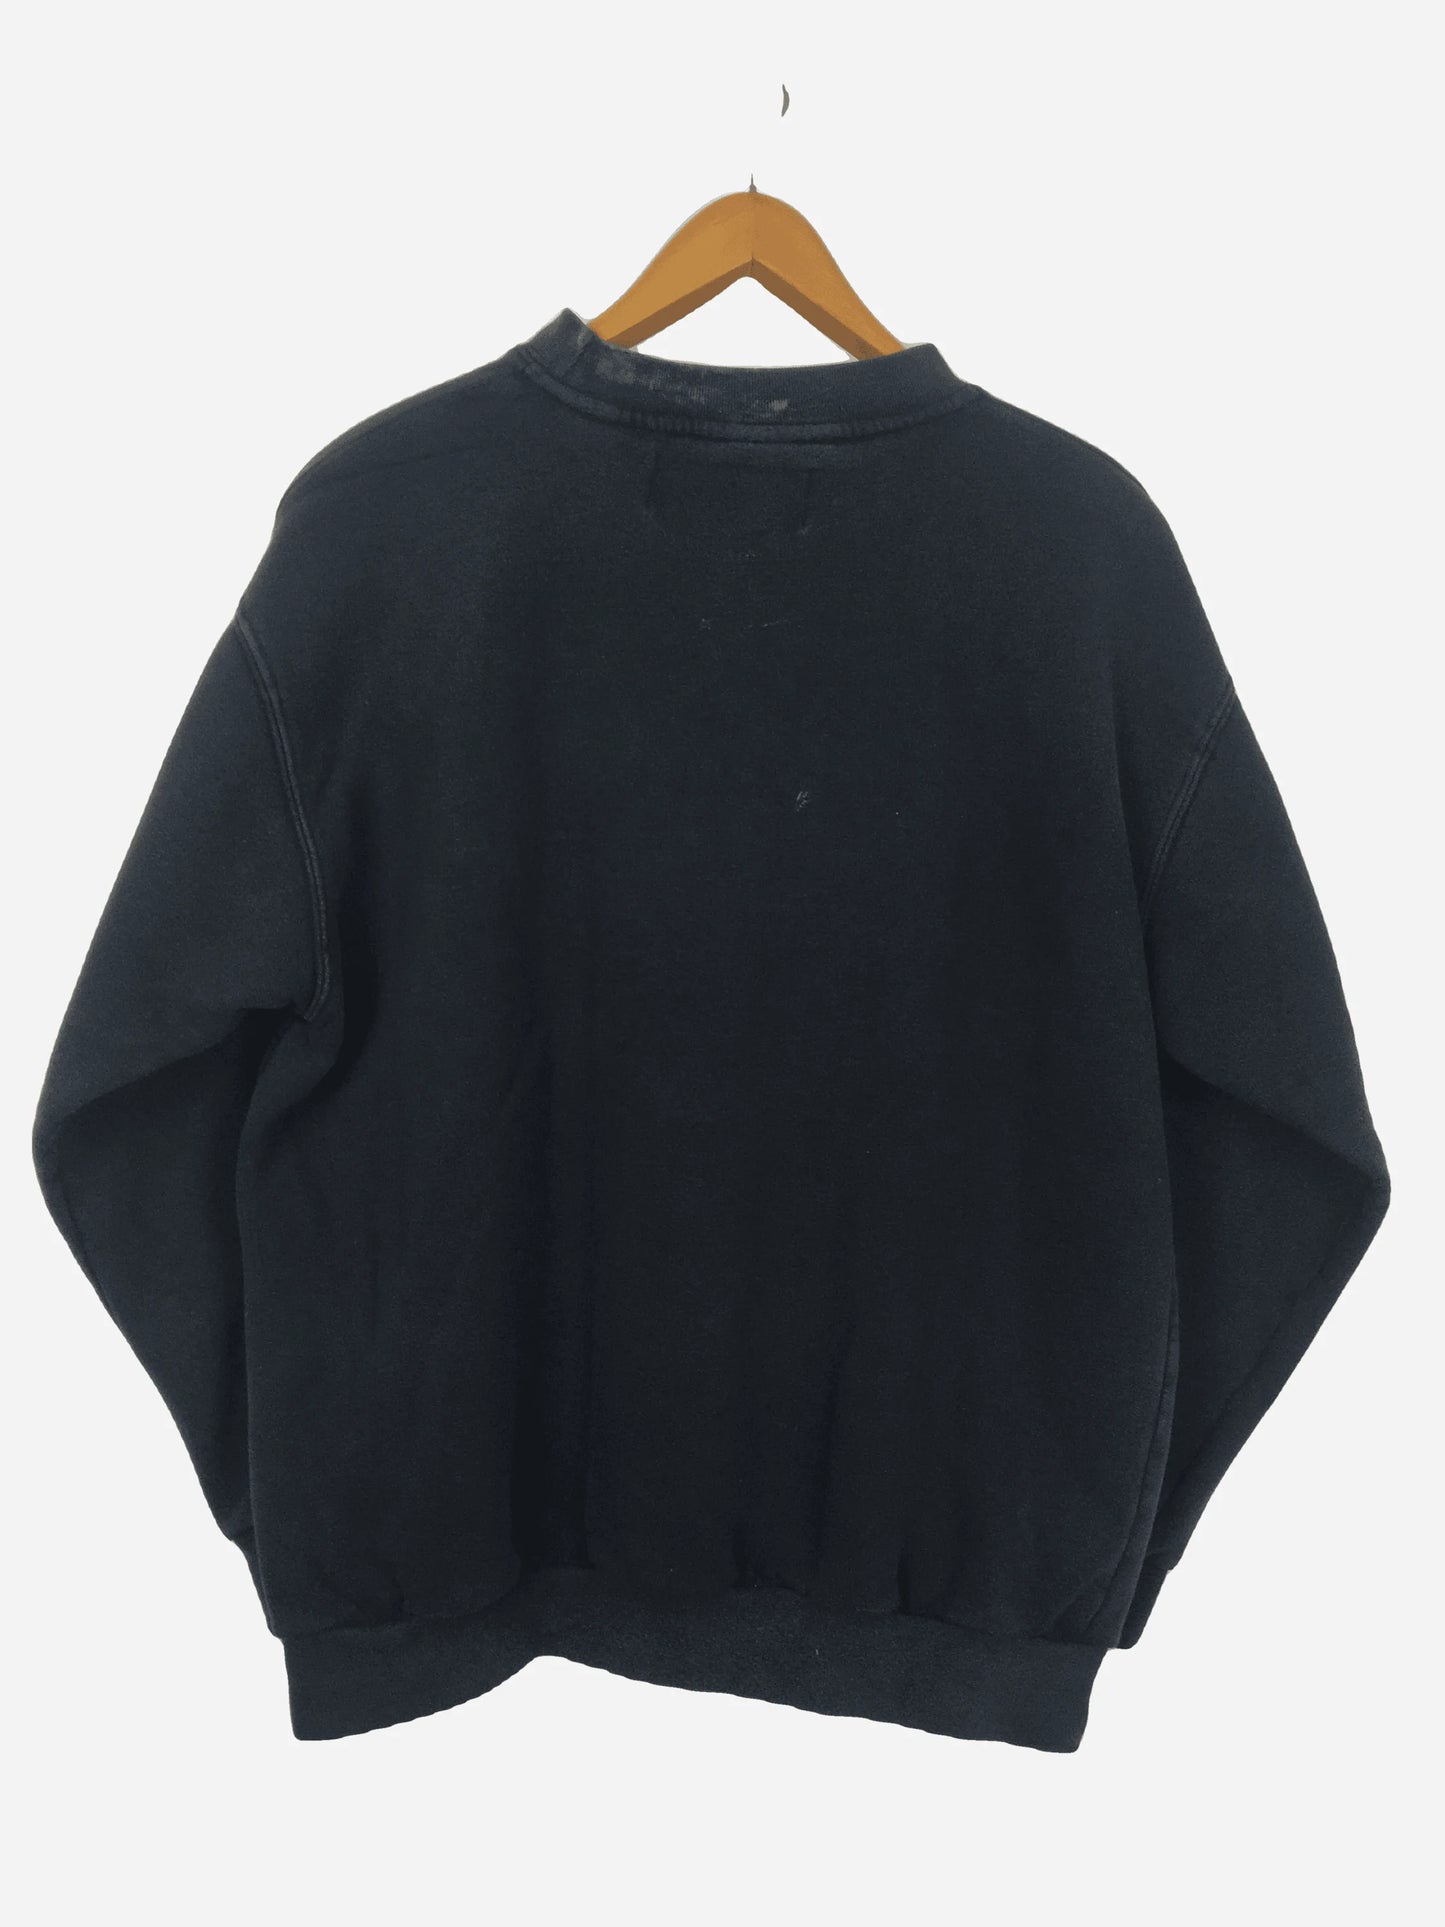 Eckō Unltd Sweater (S)